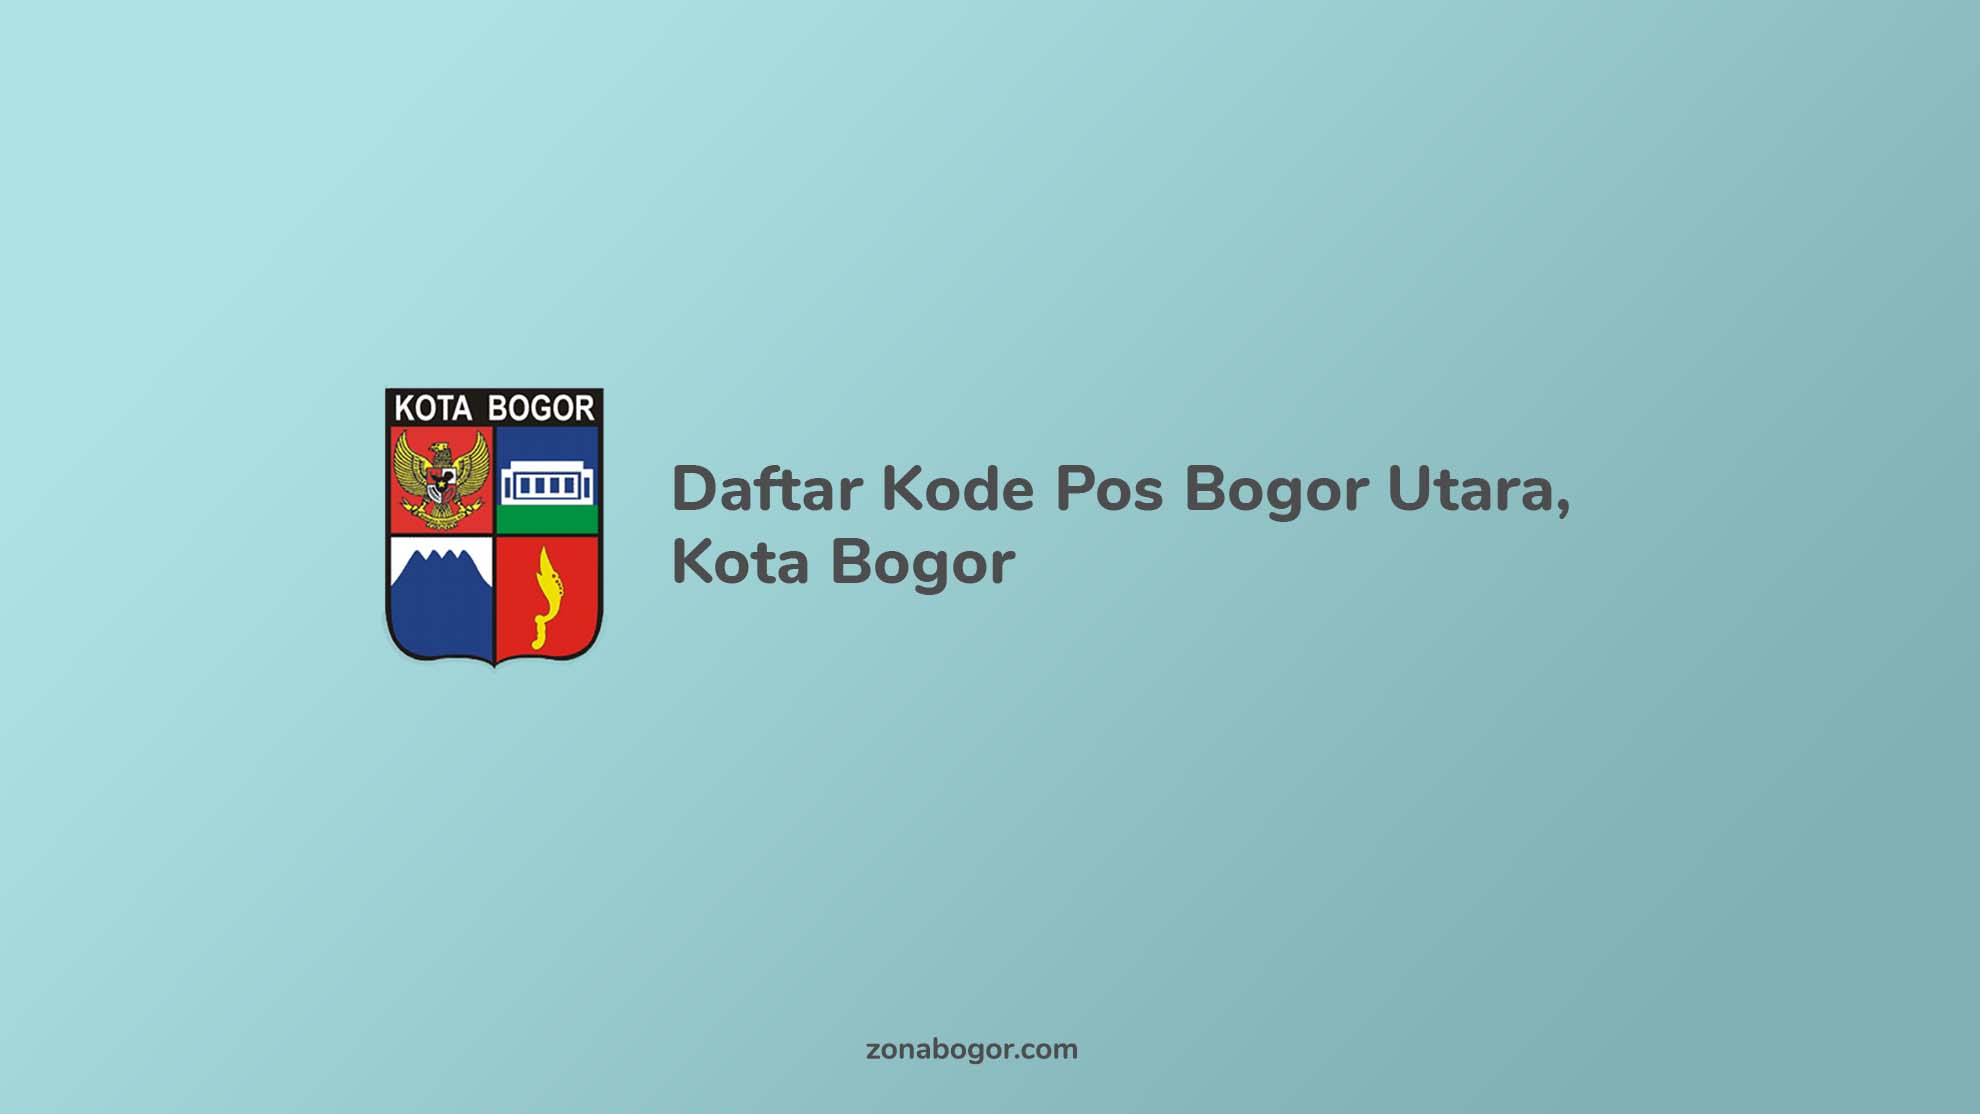 Daftar Kode Pos Bogor Utara, Kota Bogor